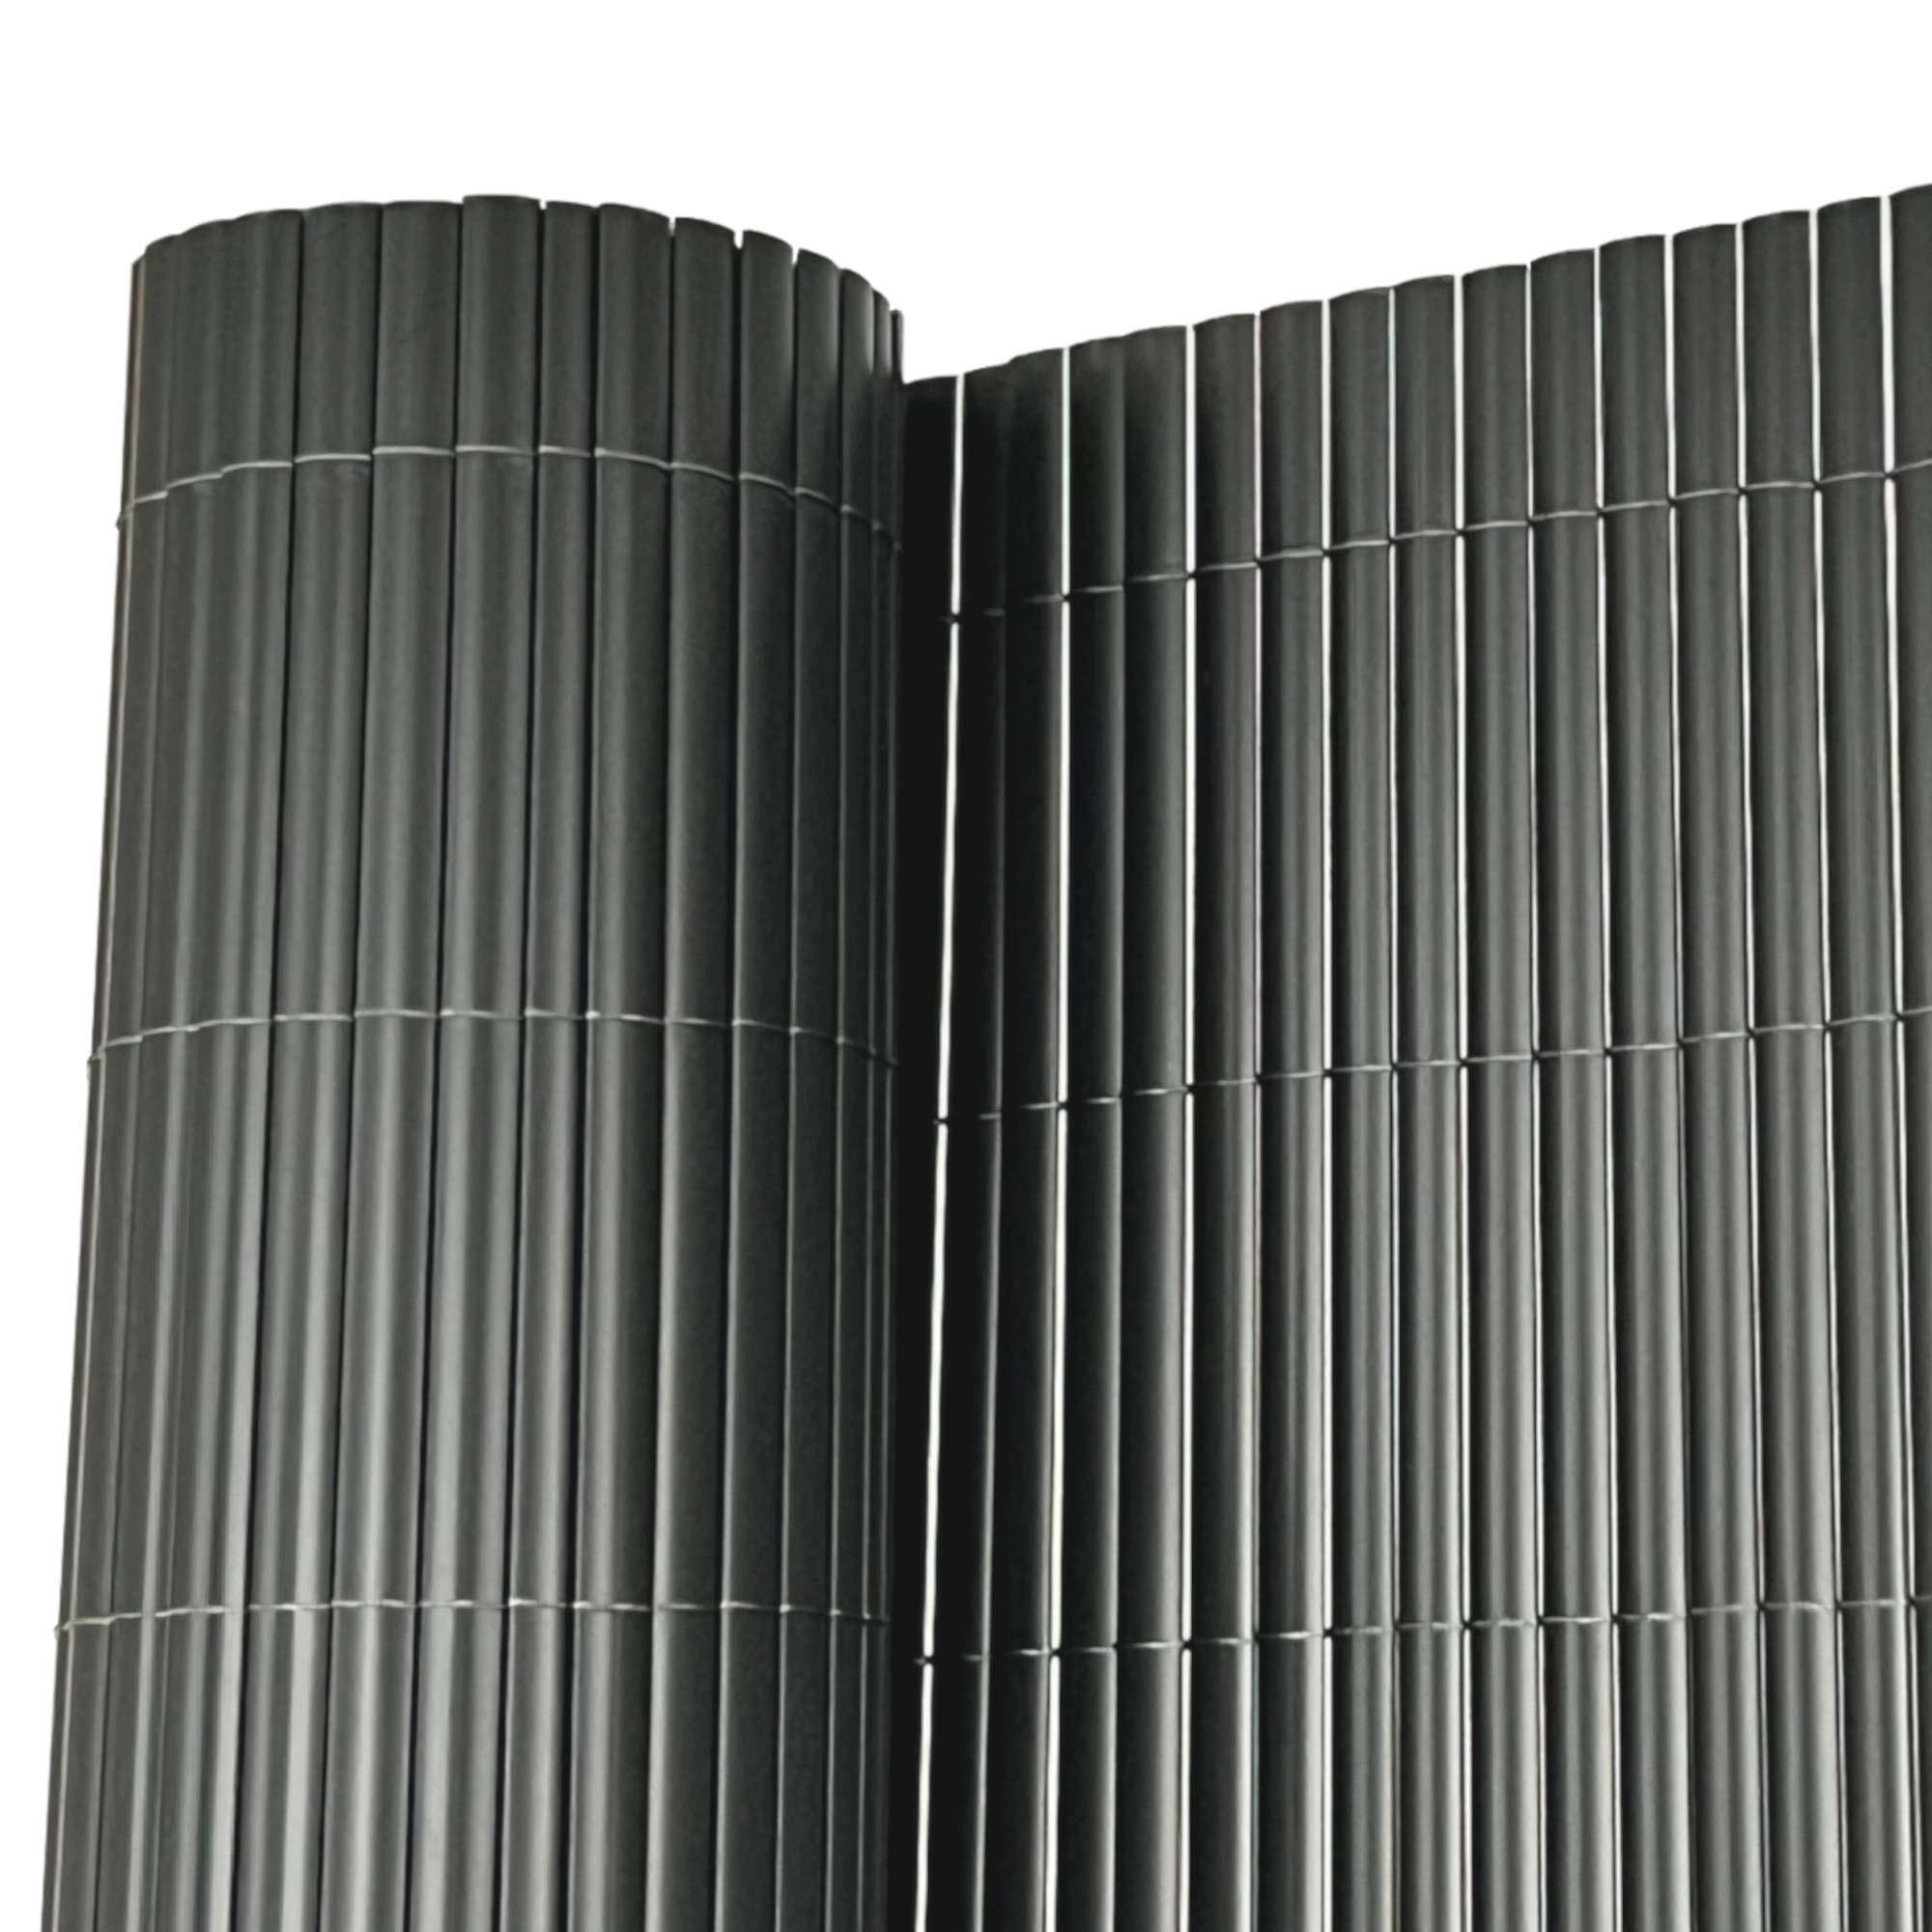 3m x 1.2m PVC Fencing (Grey)